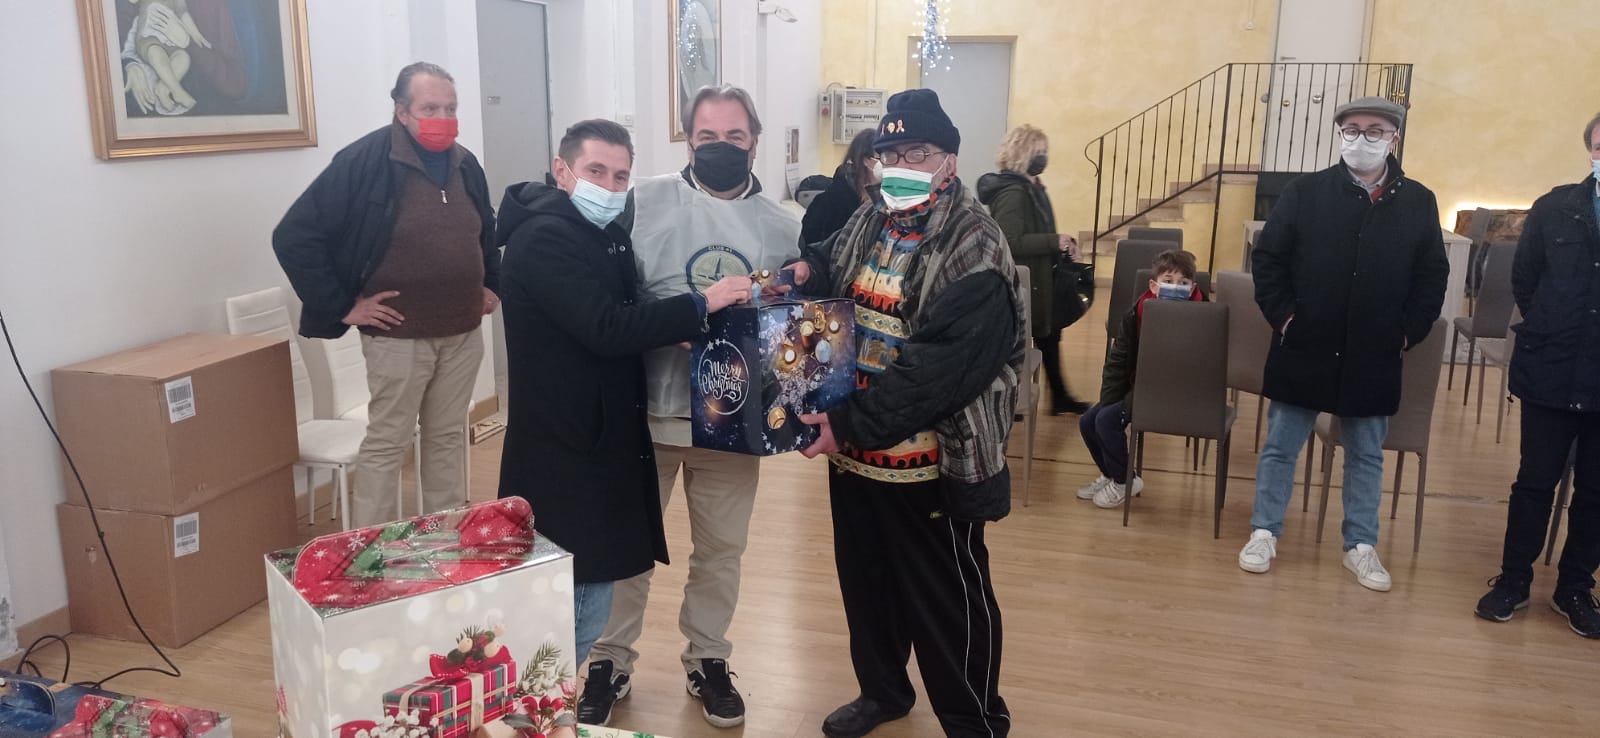 Il Club 41 Marcuzzo regala pacchi famiglia per un Natale di solidarietà